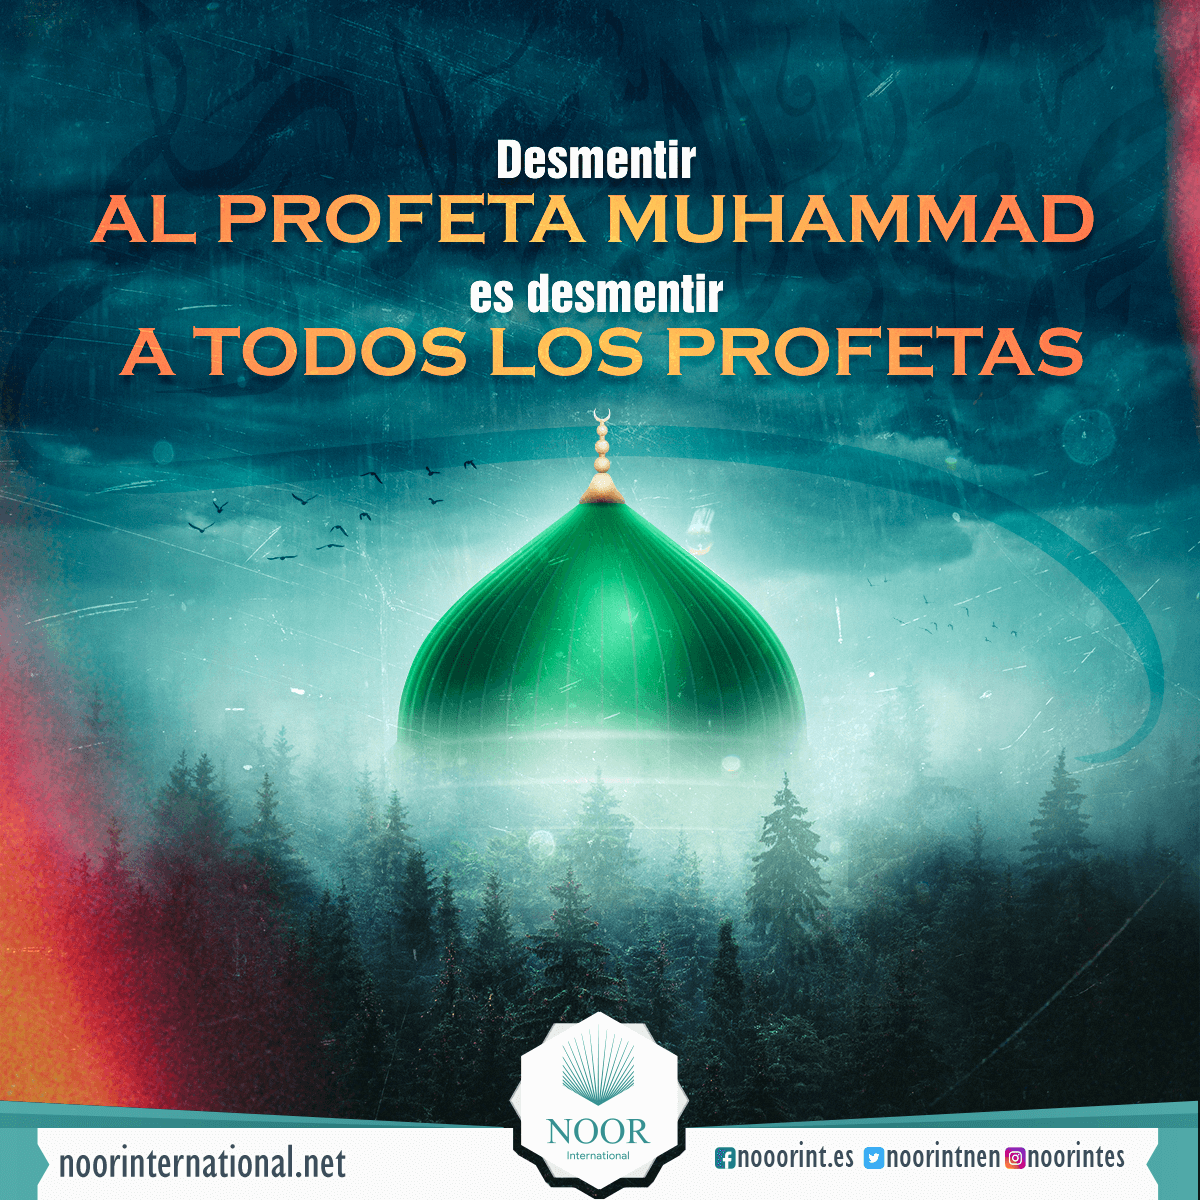 Desmentir al Profeta Muhammad es desmentir a todos los profetas